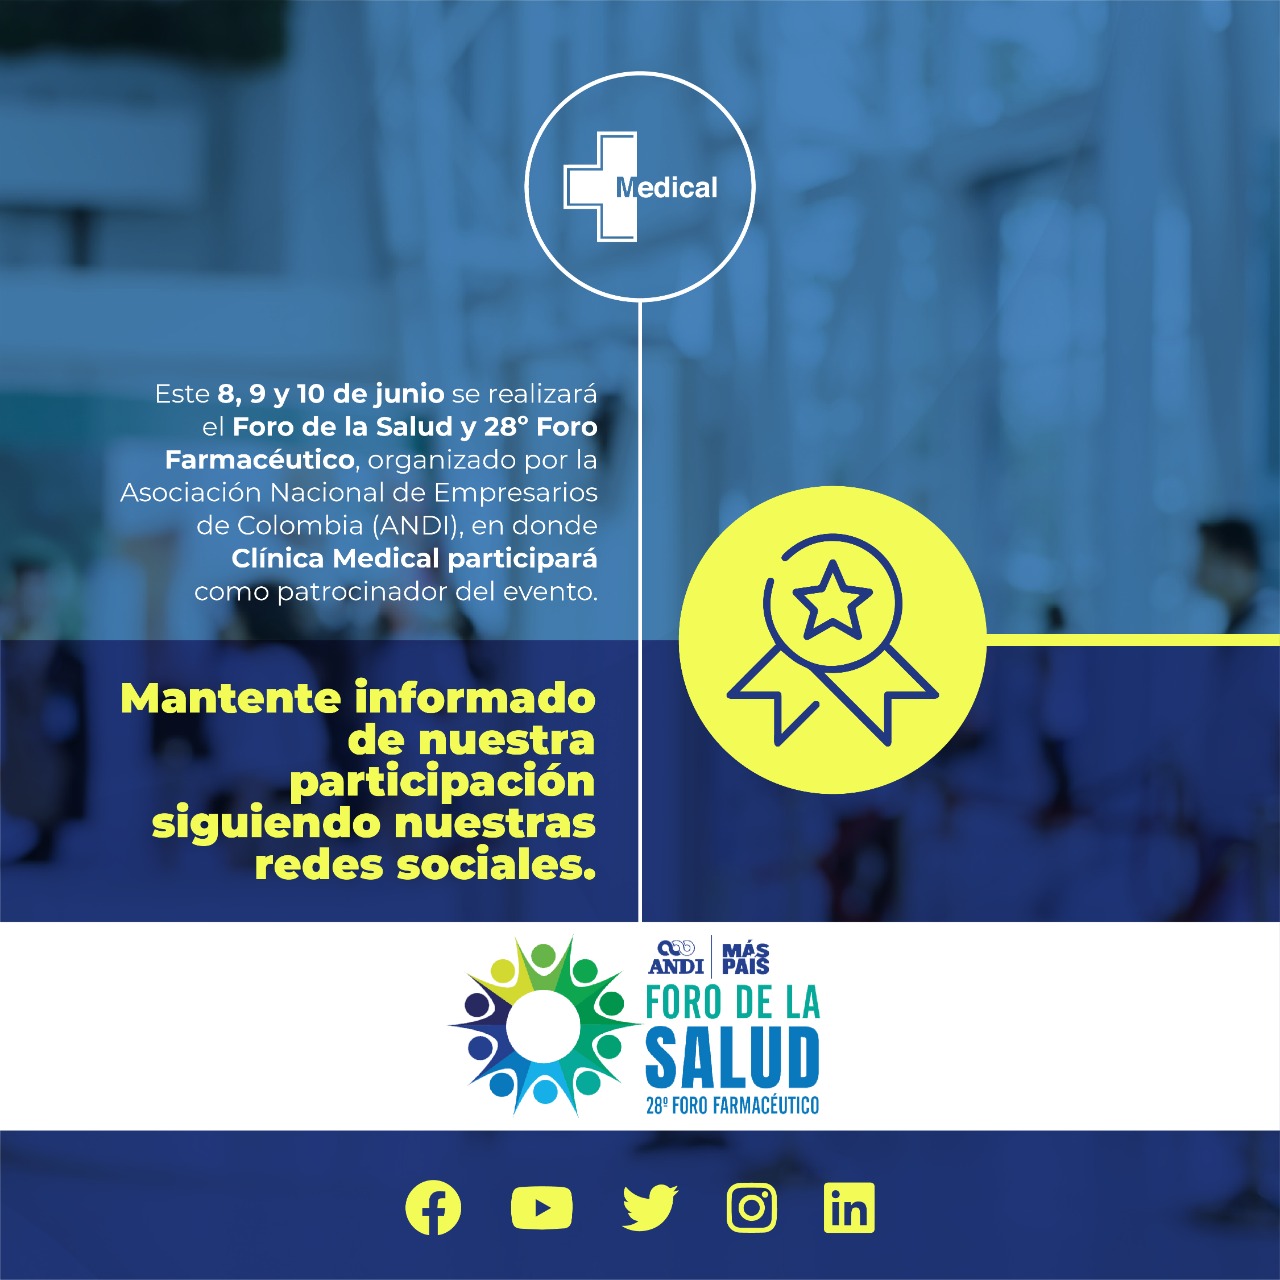 Clínica Medical: Participación en el Foro de la Salud y 28º Foro Farmacéutico organizado por la ANDI en Cartagena de Indias